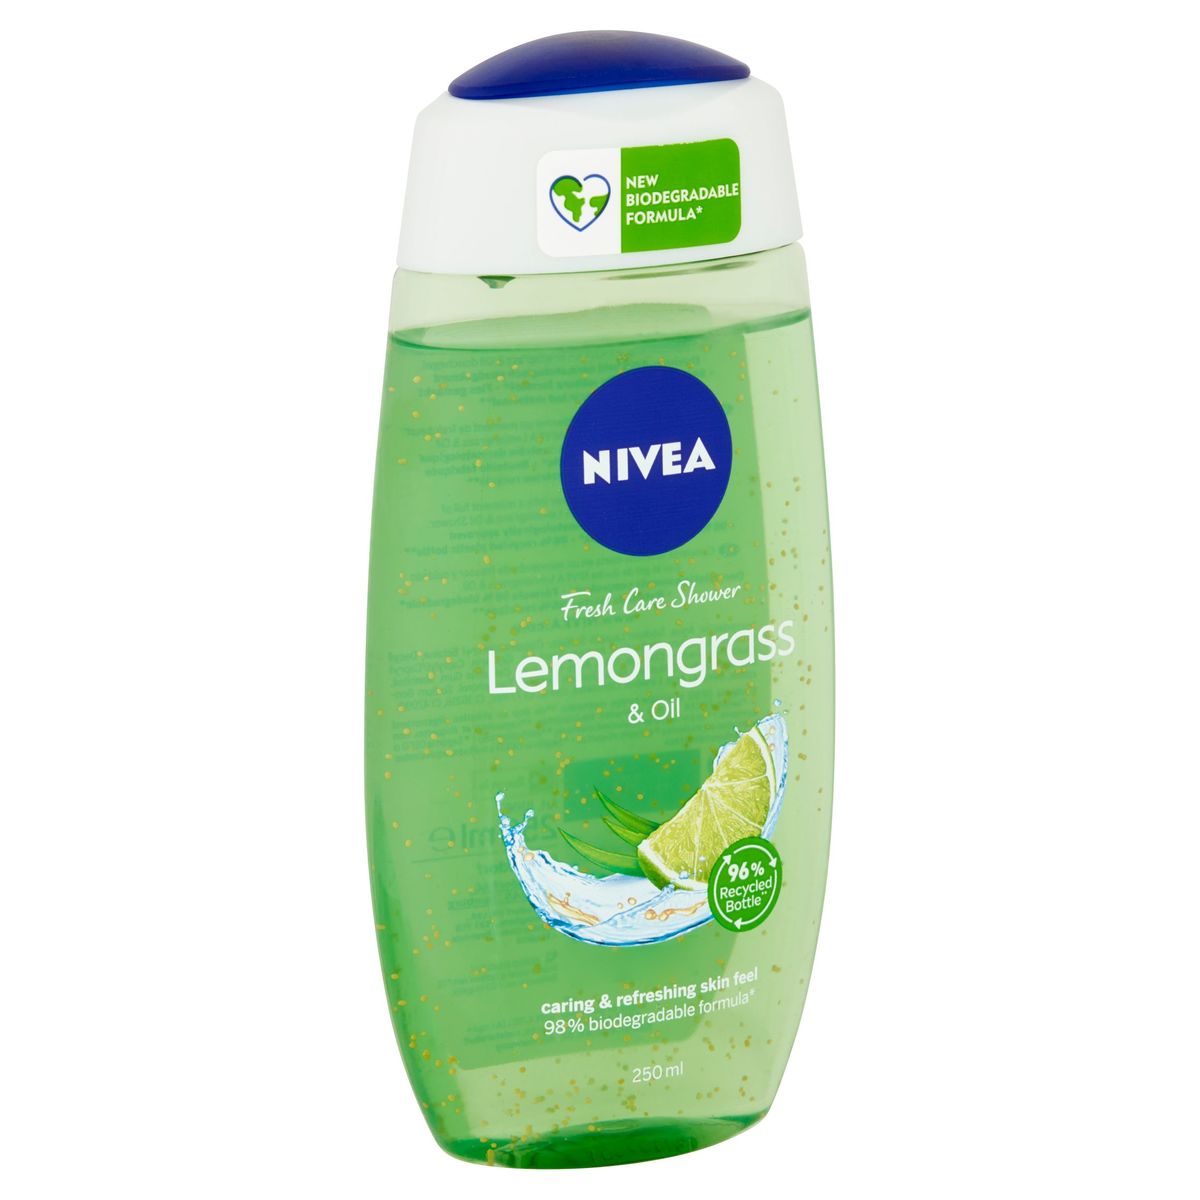 Nivea Fresh Care Shower Lemongrass & Oil 250 ml